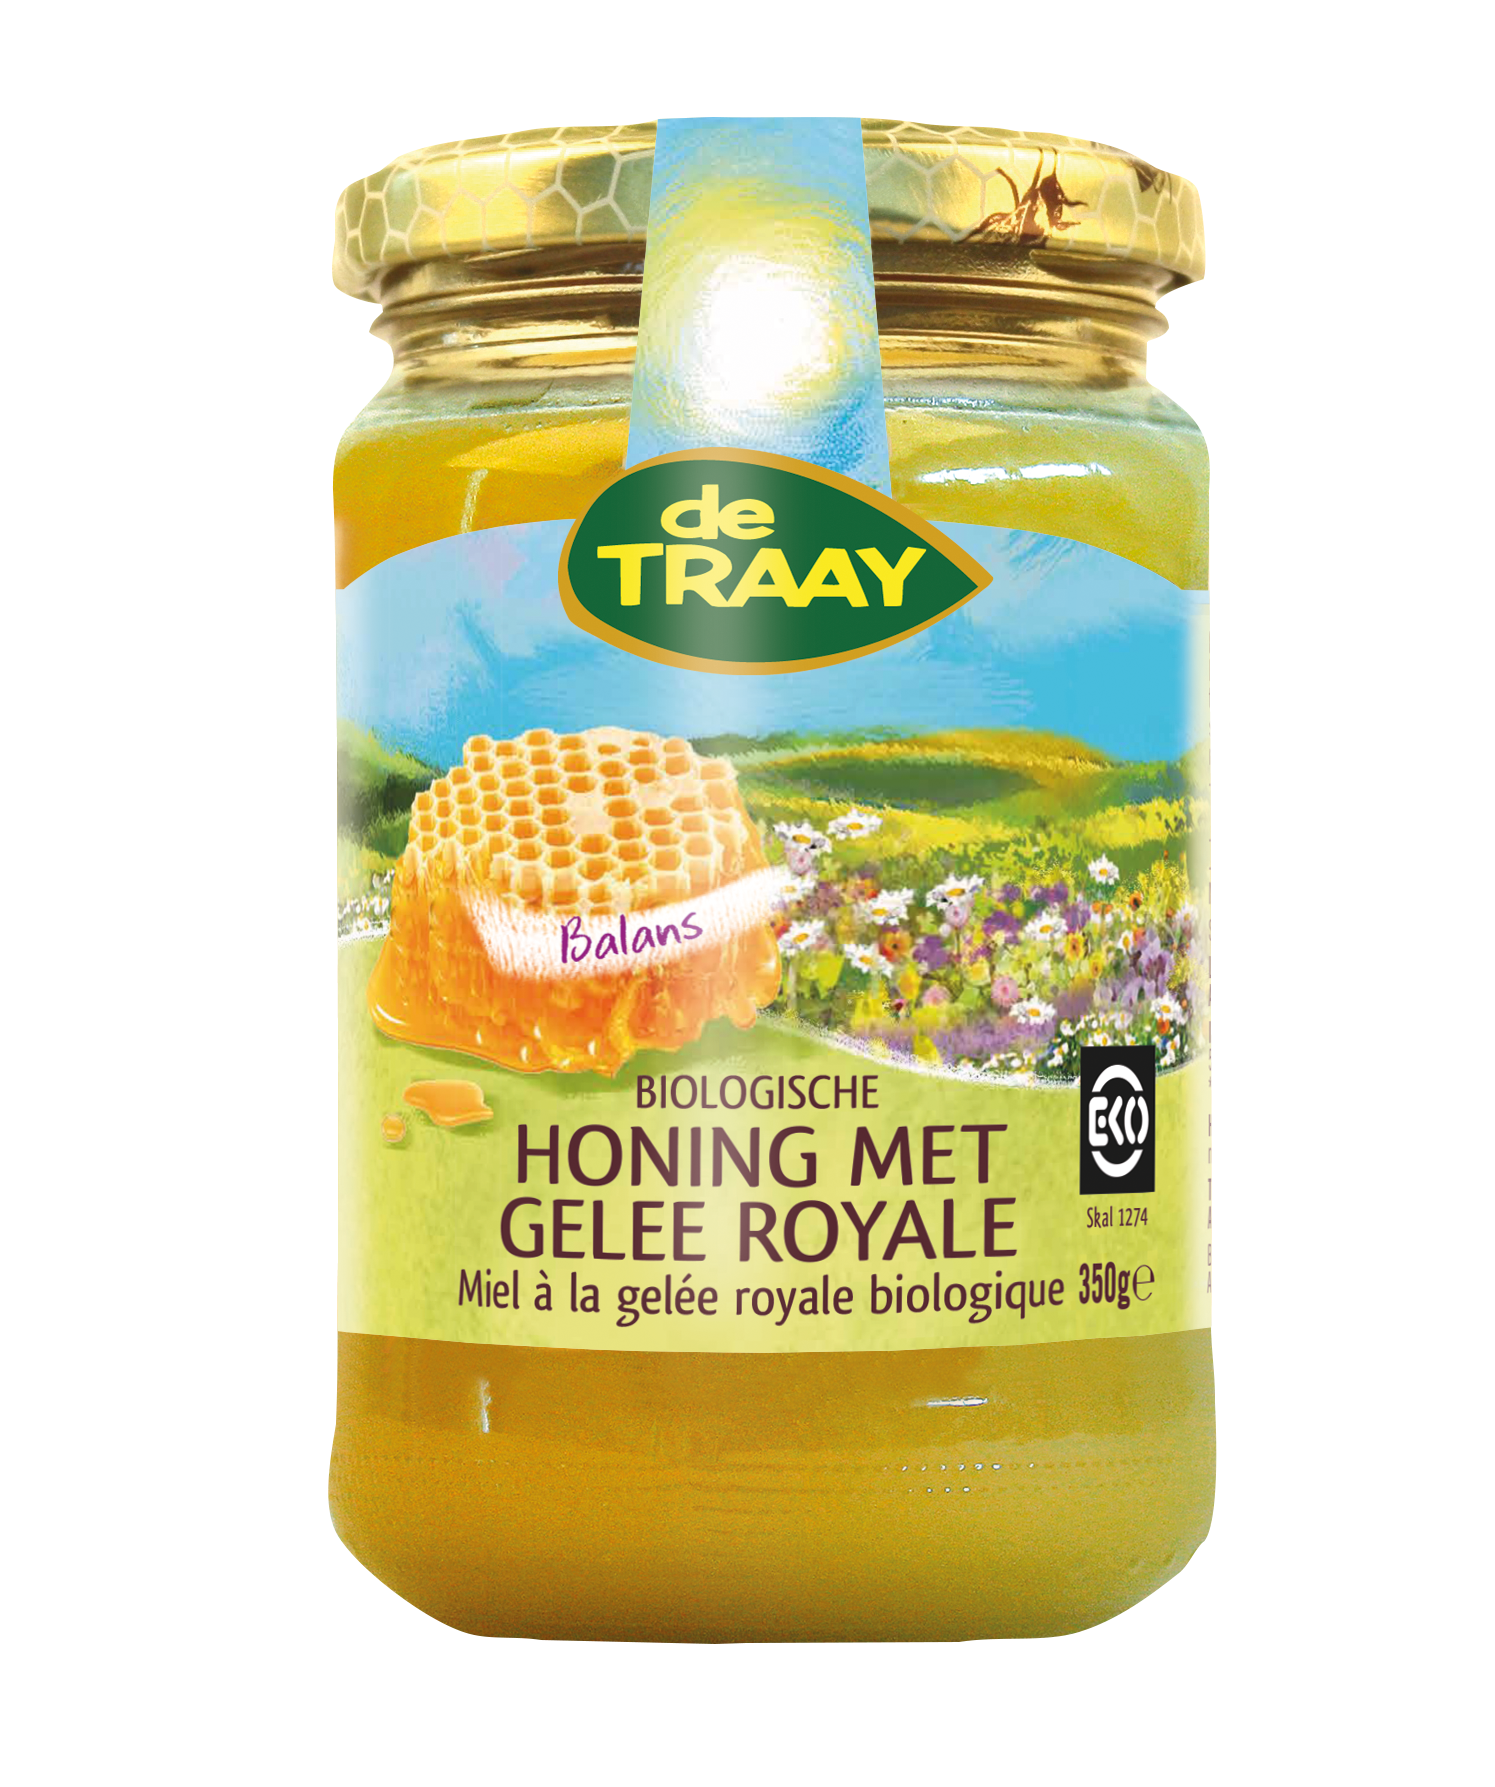 Honing Gelee Royale (bio)